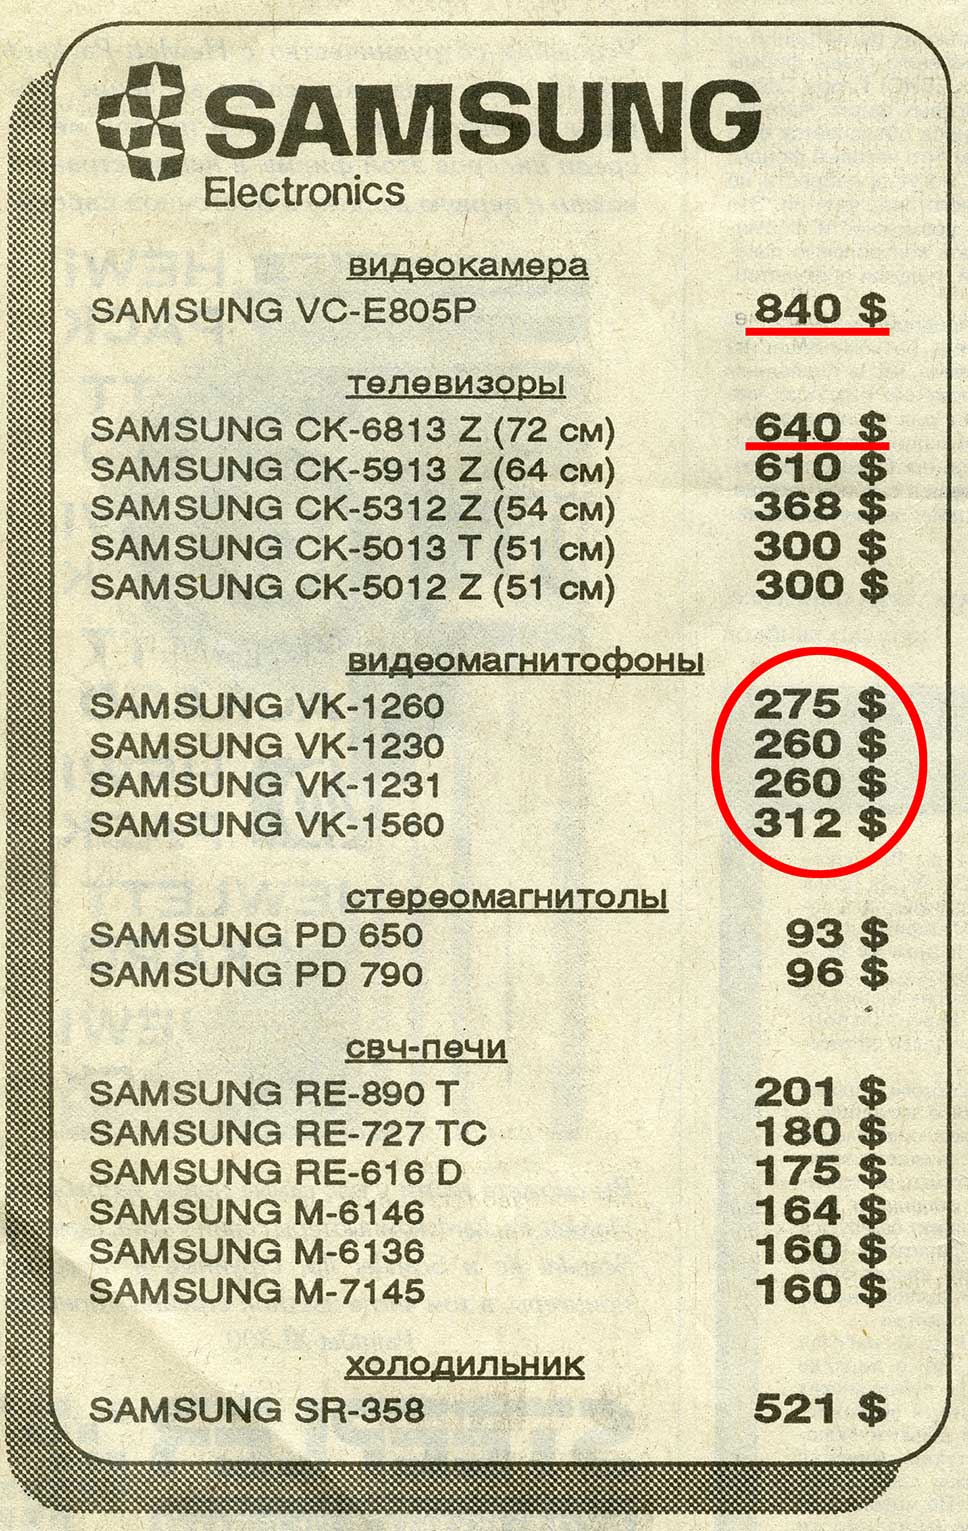 Стоимость компьютера в 1992 году